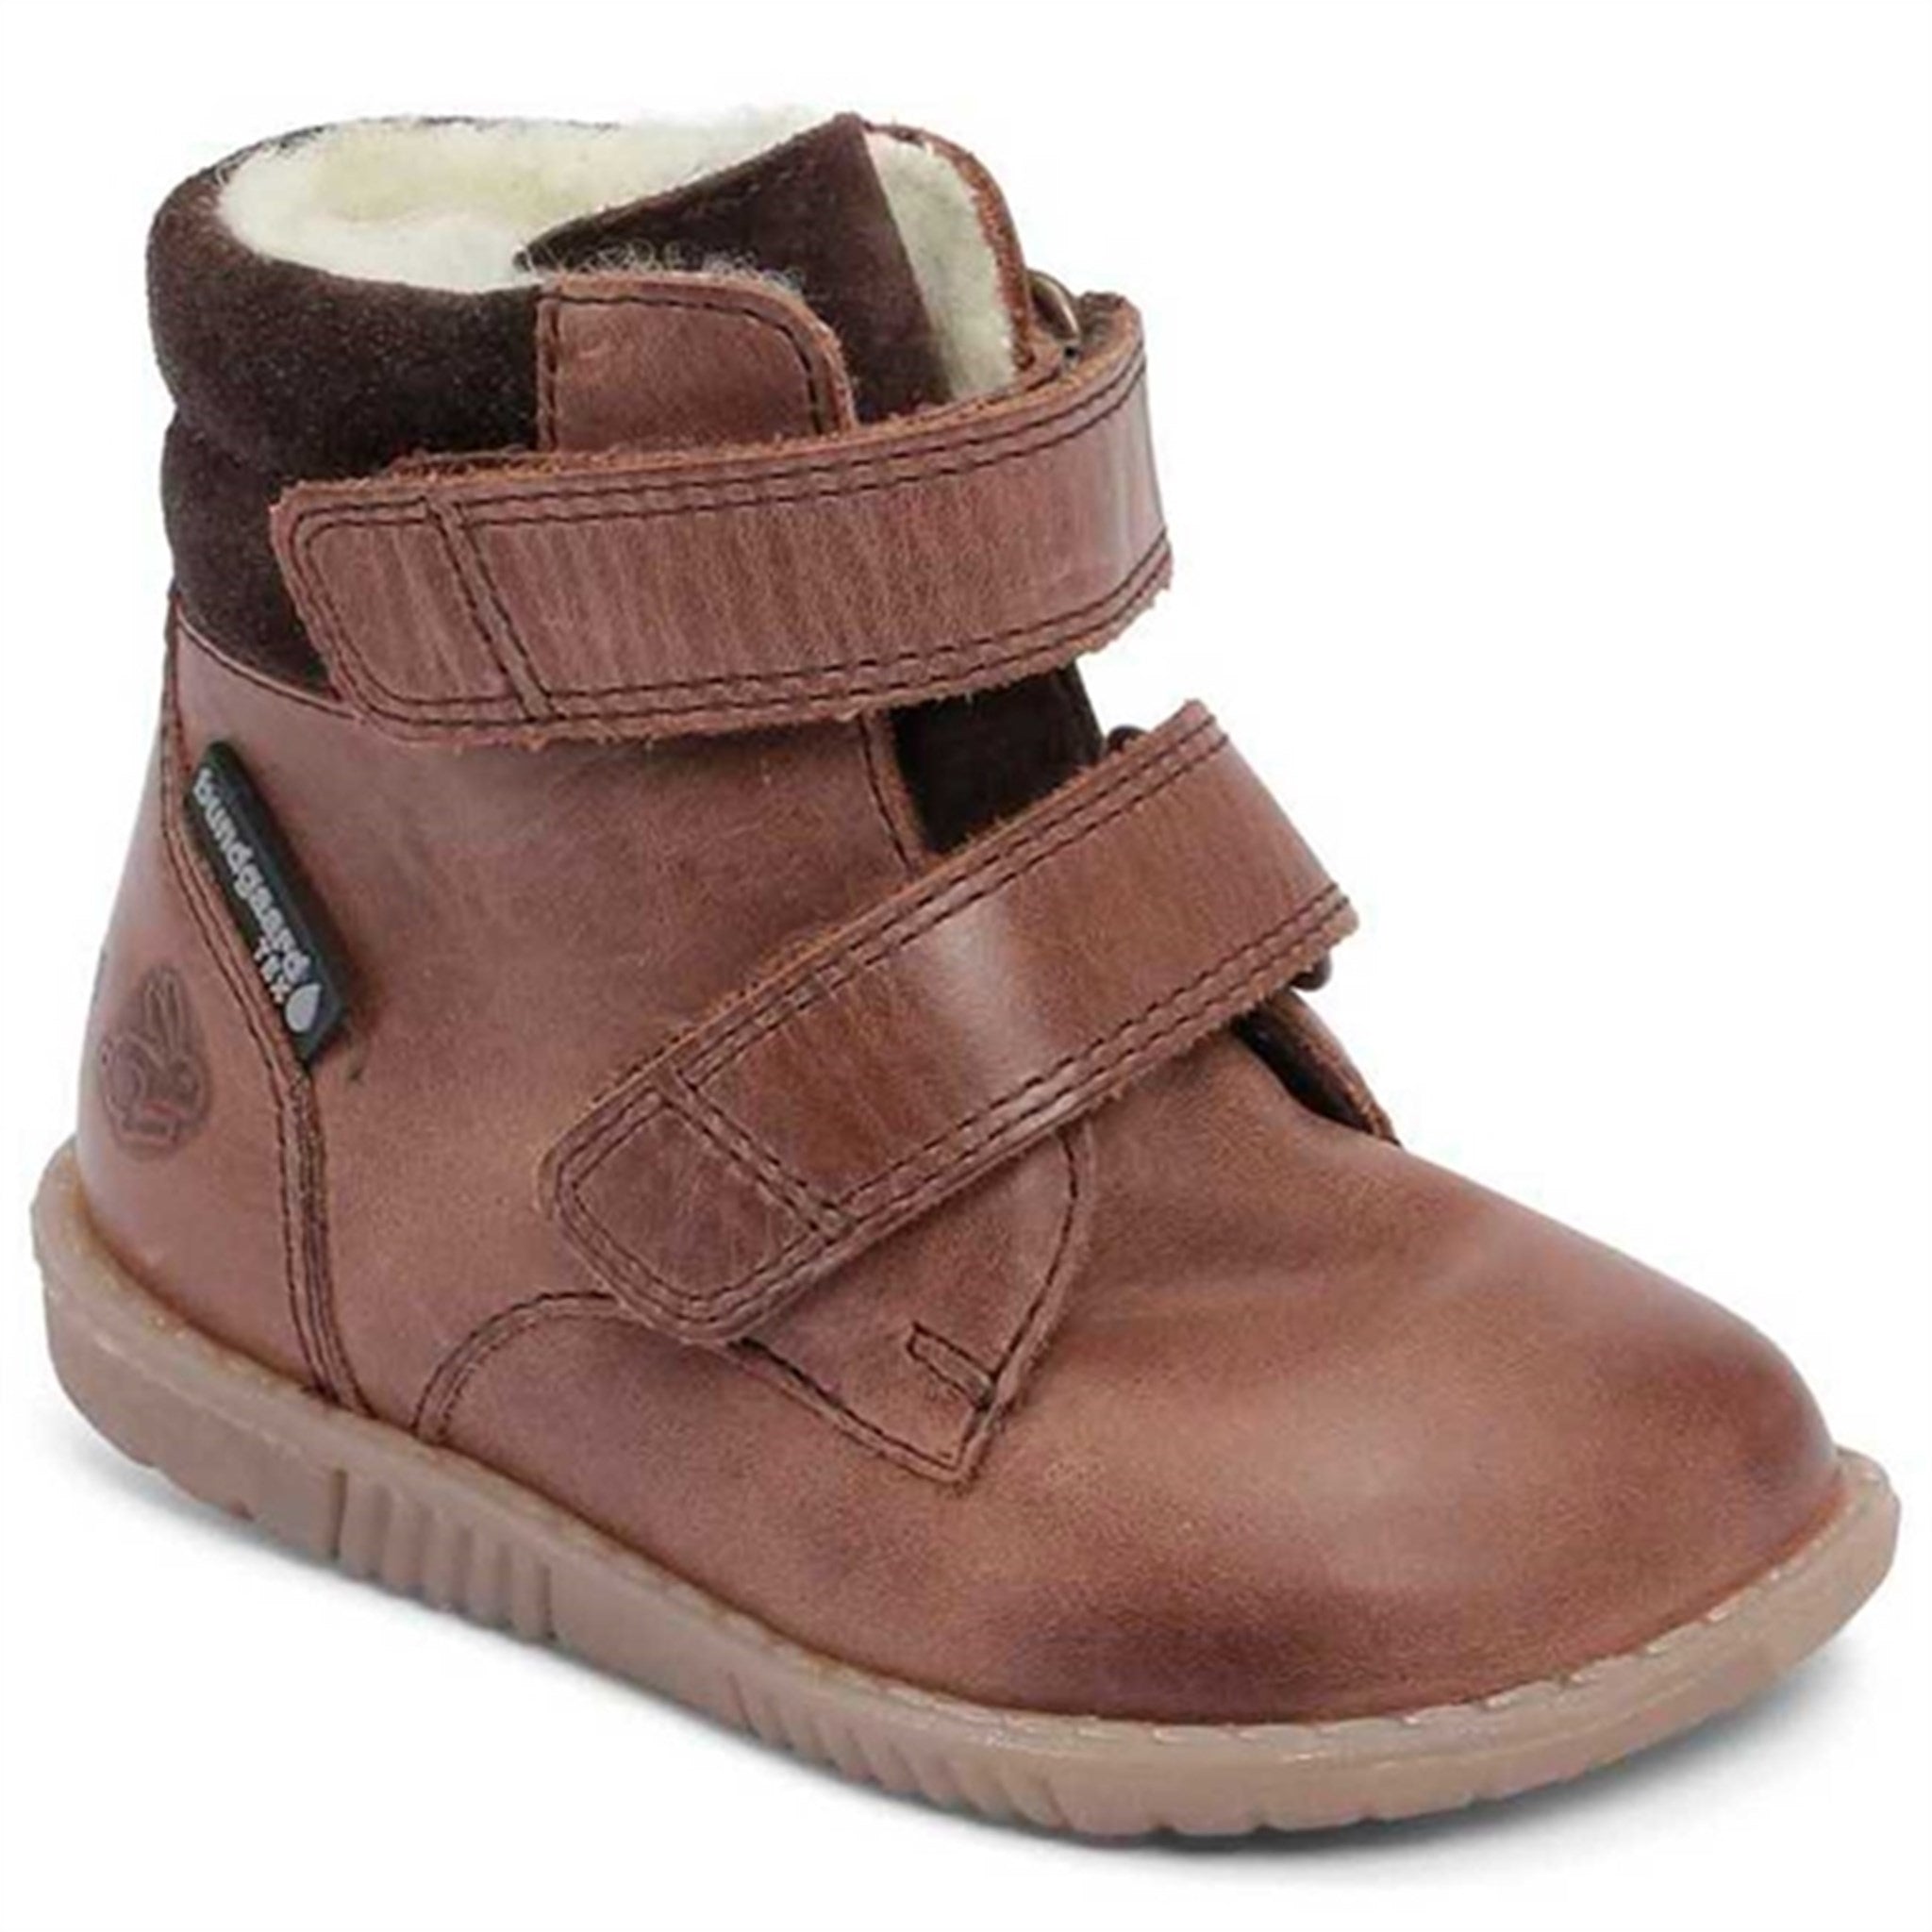 Bundgaard Rabbit Boots Velcro Brown